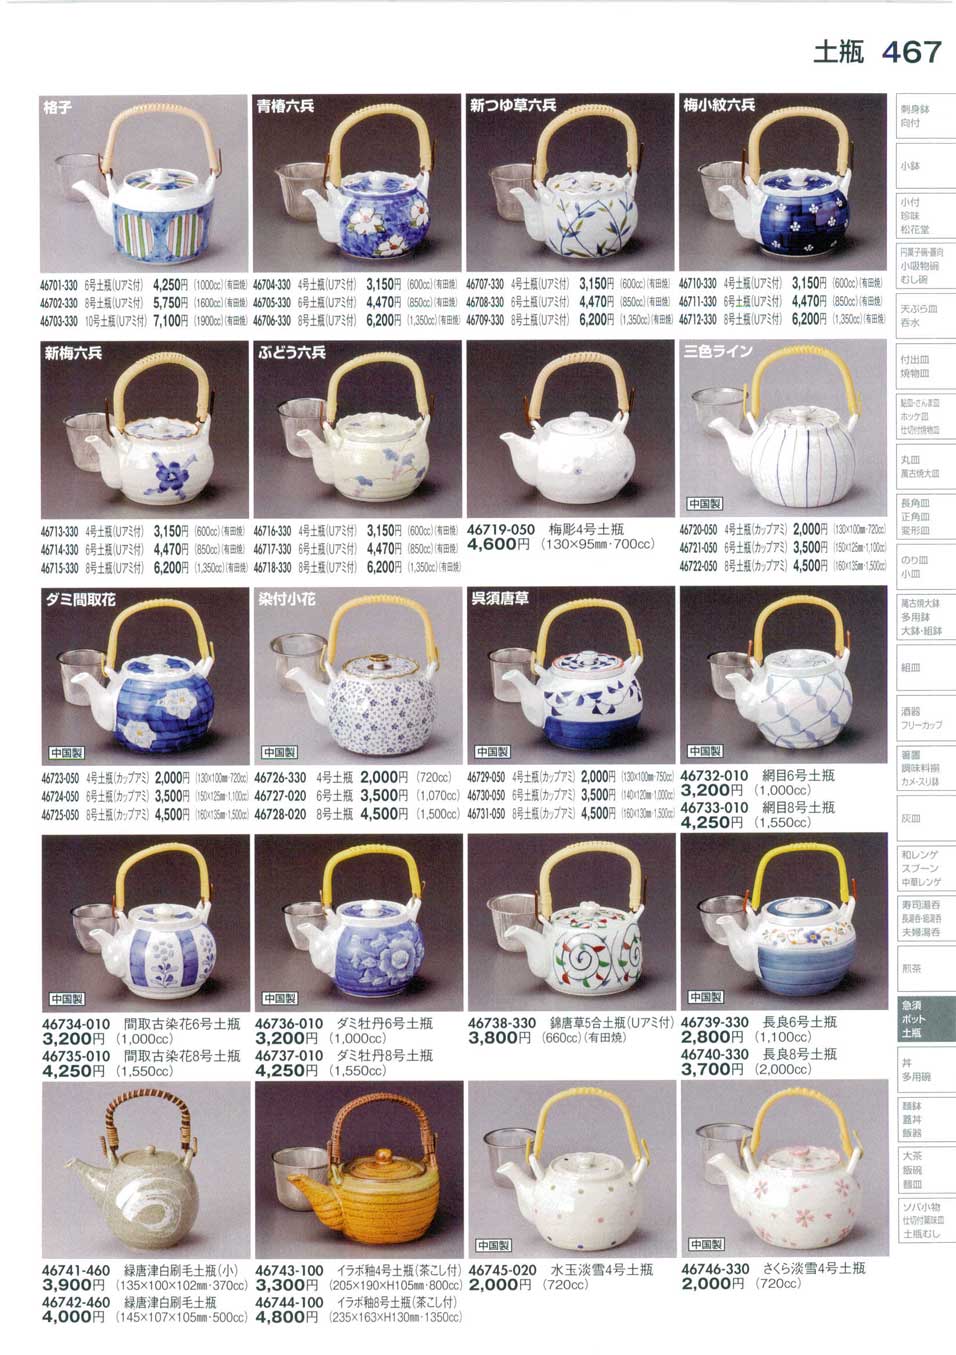 食器 土瓶Earthenware Teapot with Handle on Top 陶里３０－467ページ